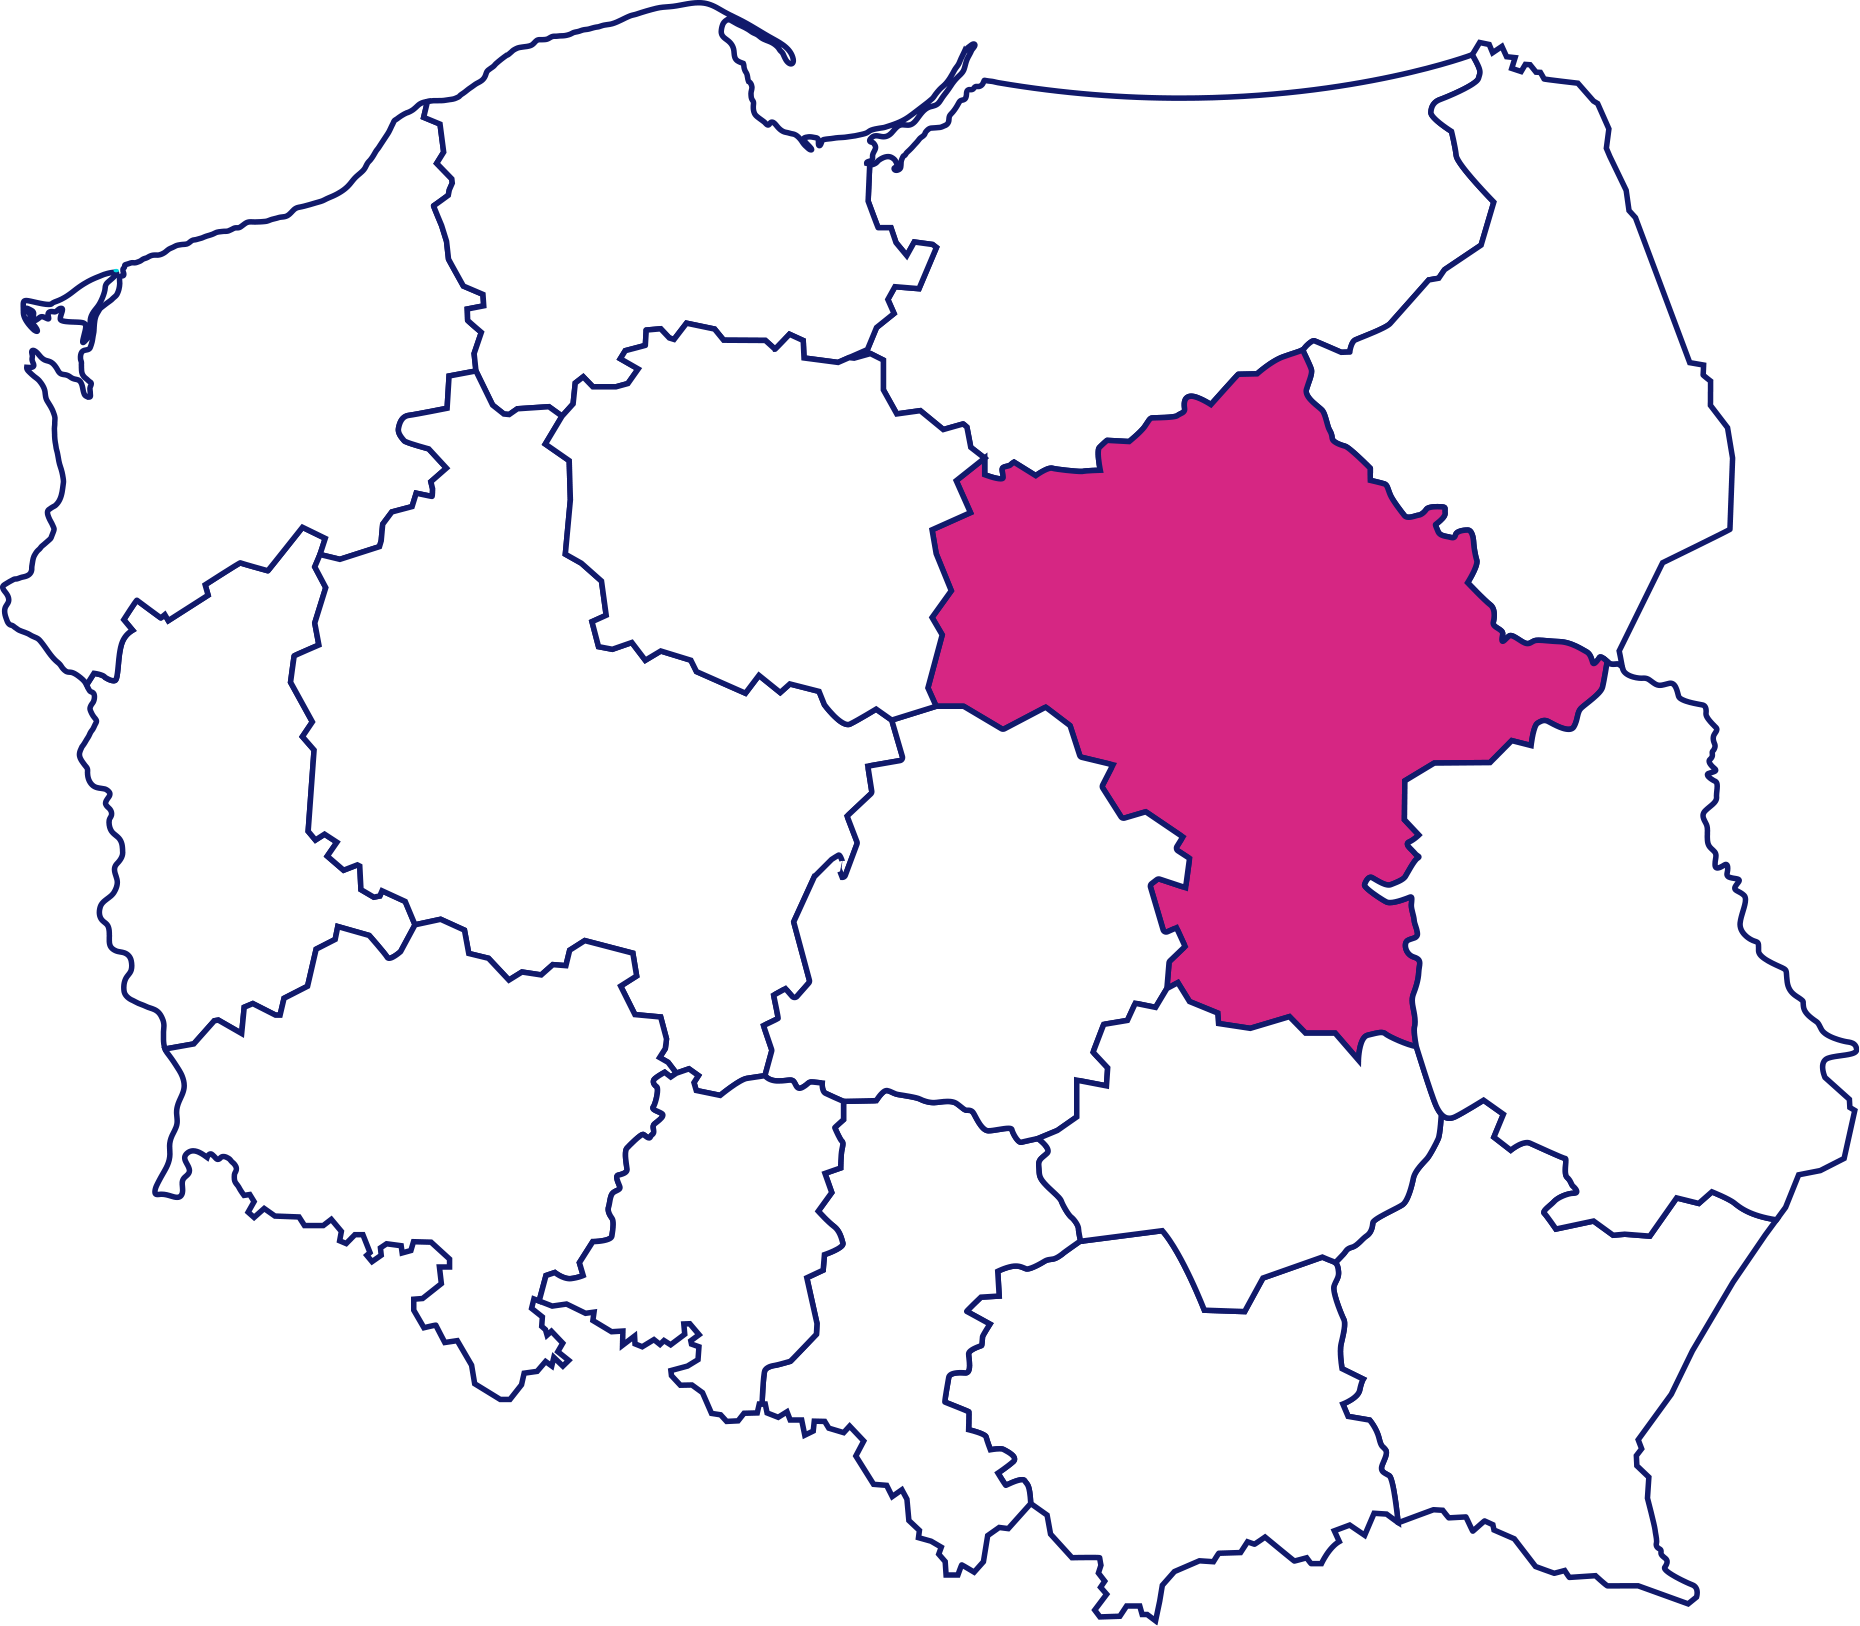 Mapa Polski z wyróżnionym województwem mazowieckim